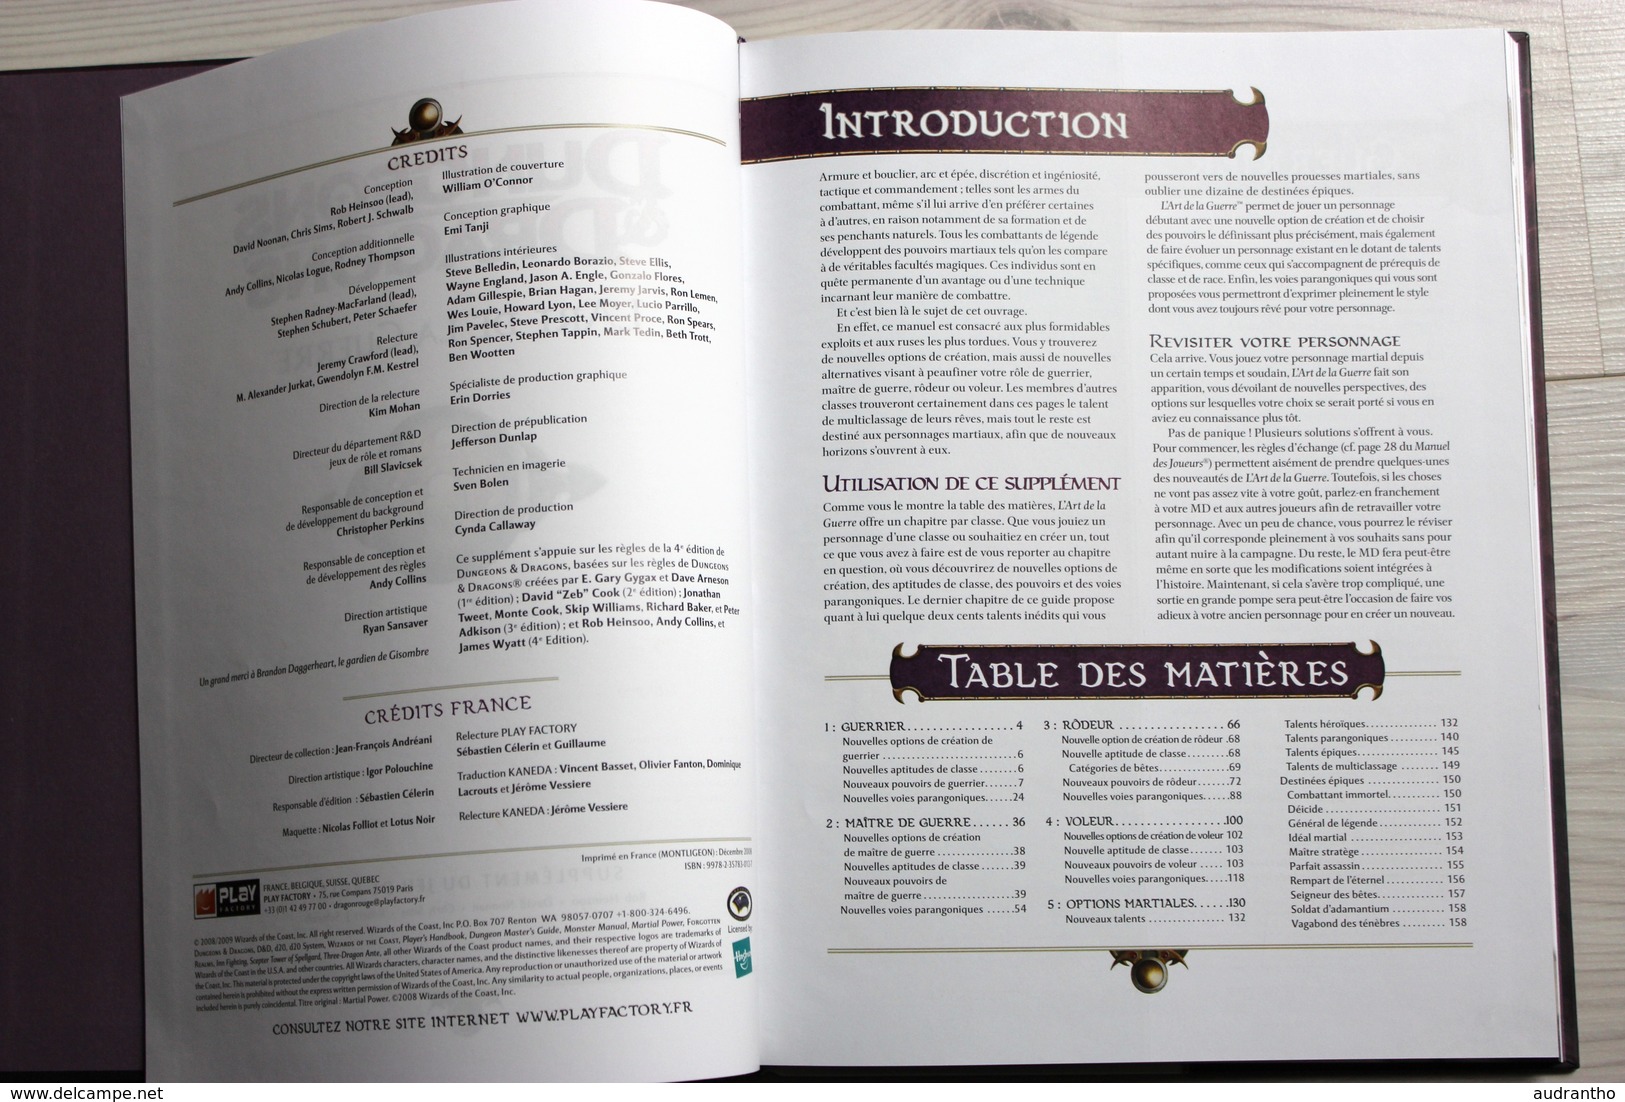 Livre Dungeons Et Dragons L'art De La Guerre Jeu De Rôle Neuf Donjons Et Dragons - Literature & Instructions